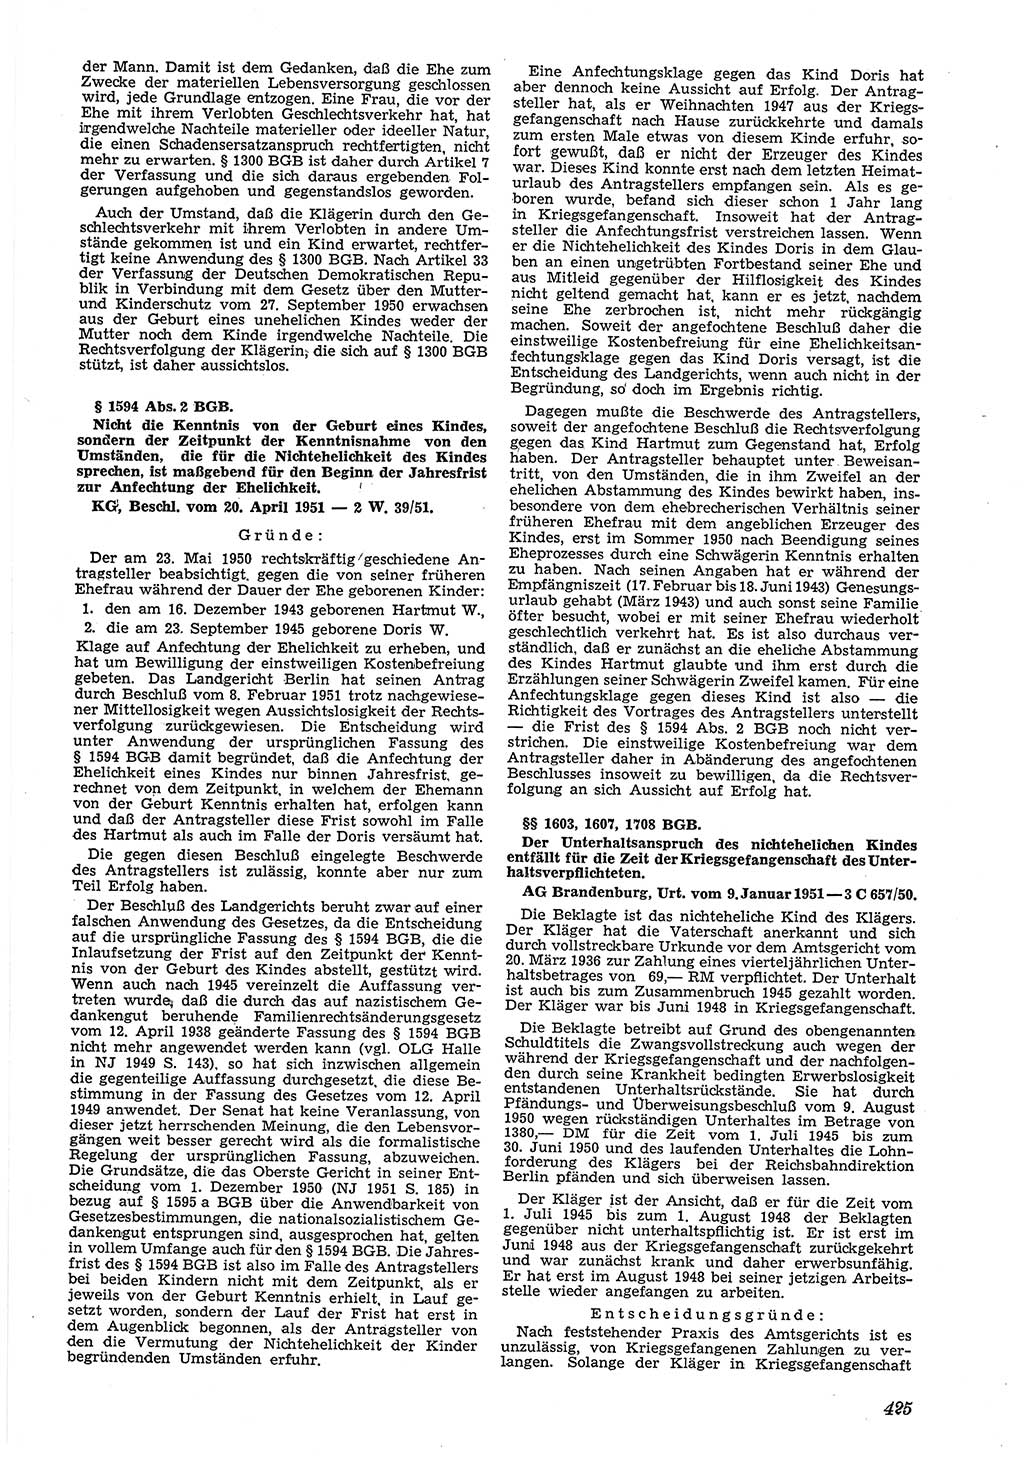 Neue Justiz (NJ), Zeitschrift für Recht und Rechtswissenschaft [Deutsche Demokratische Republik (DDR)], 5. Jahrgang 1951, Seite 425 (NJ DDR 1951, S. 425)